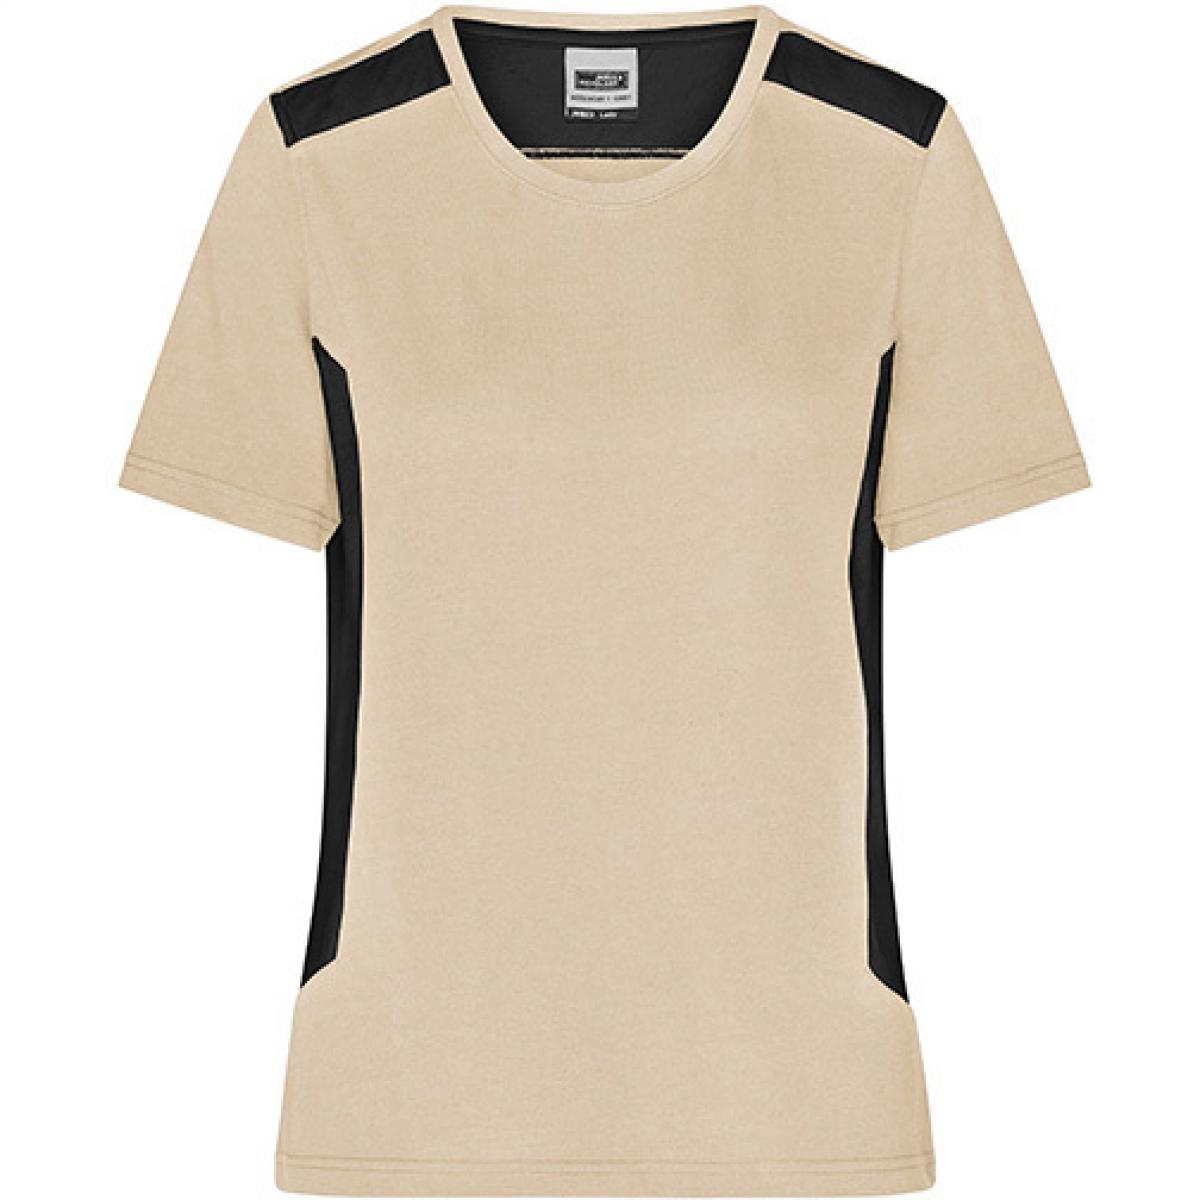 Hersteller: James+Nicholson Herstellernummer: JN1823 Artikelbezeichnung: Damen T, Ladies‘ Workwear T-Shirt -STRONG- Waschbar bis 60 ° Farbe: Stone/Black